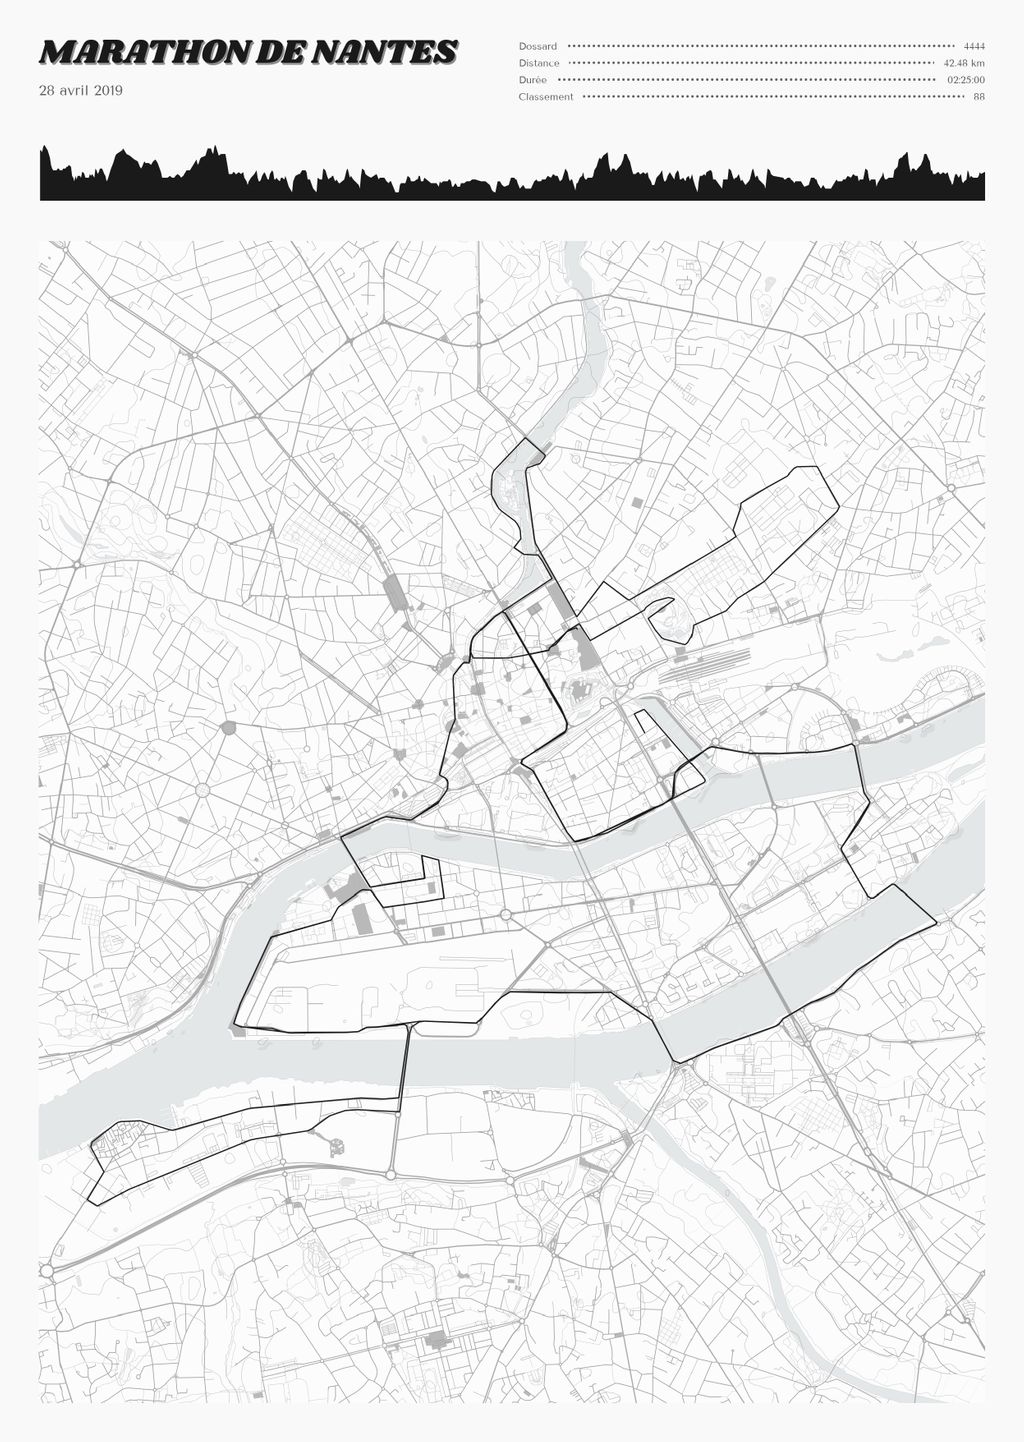 Póster con un mapa de Marathon de Nantes